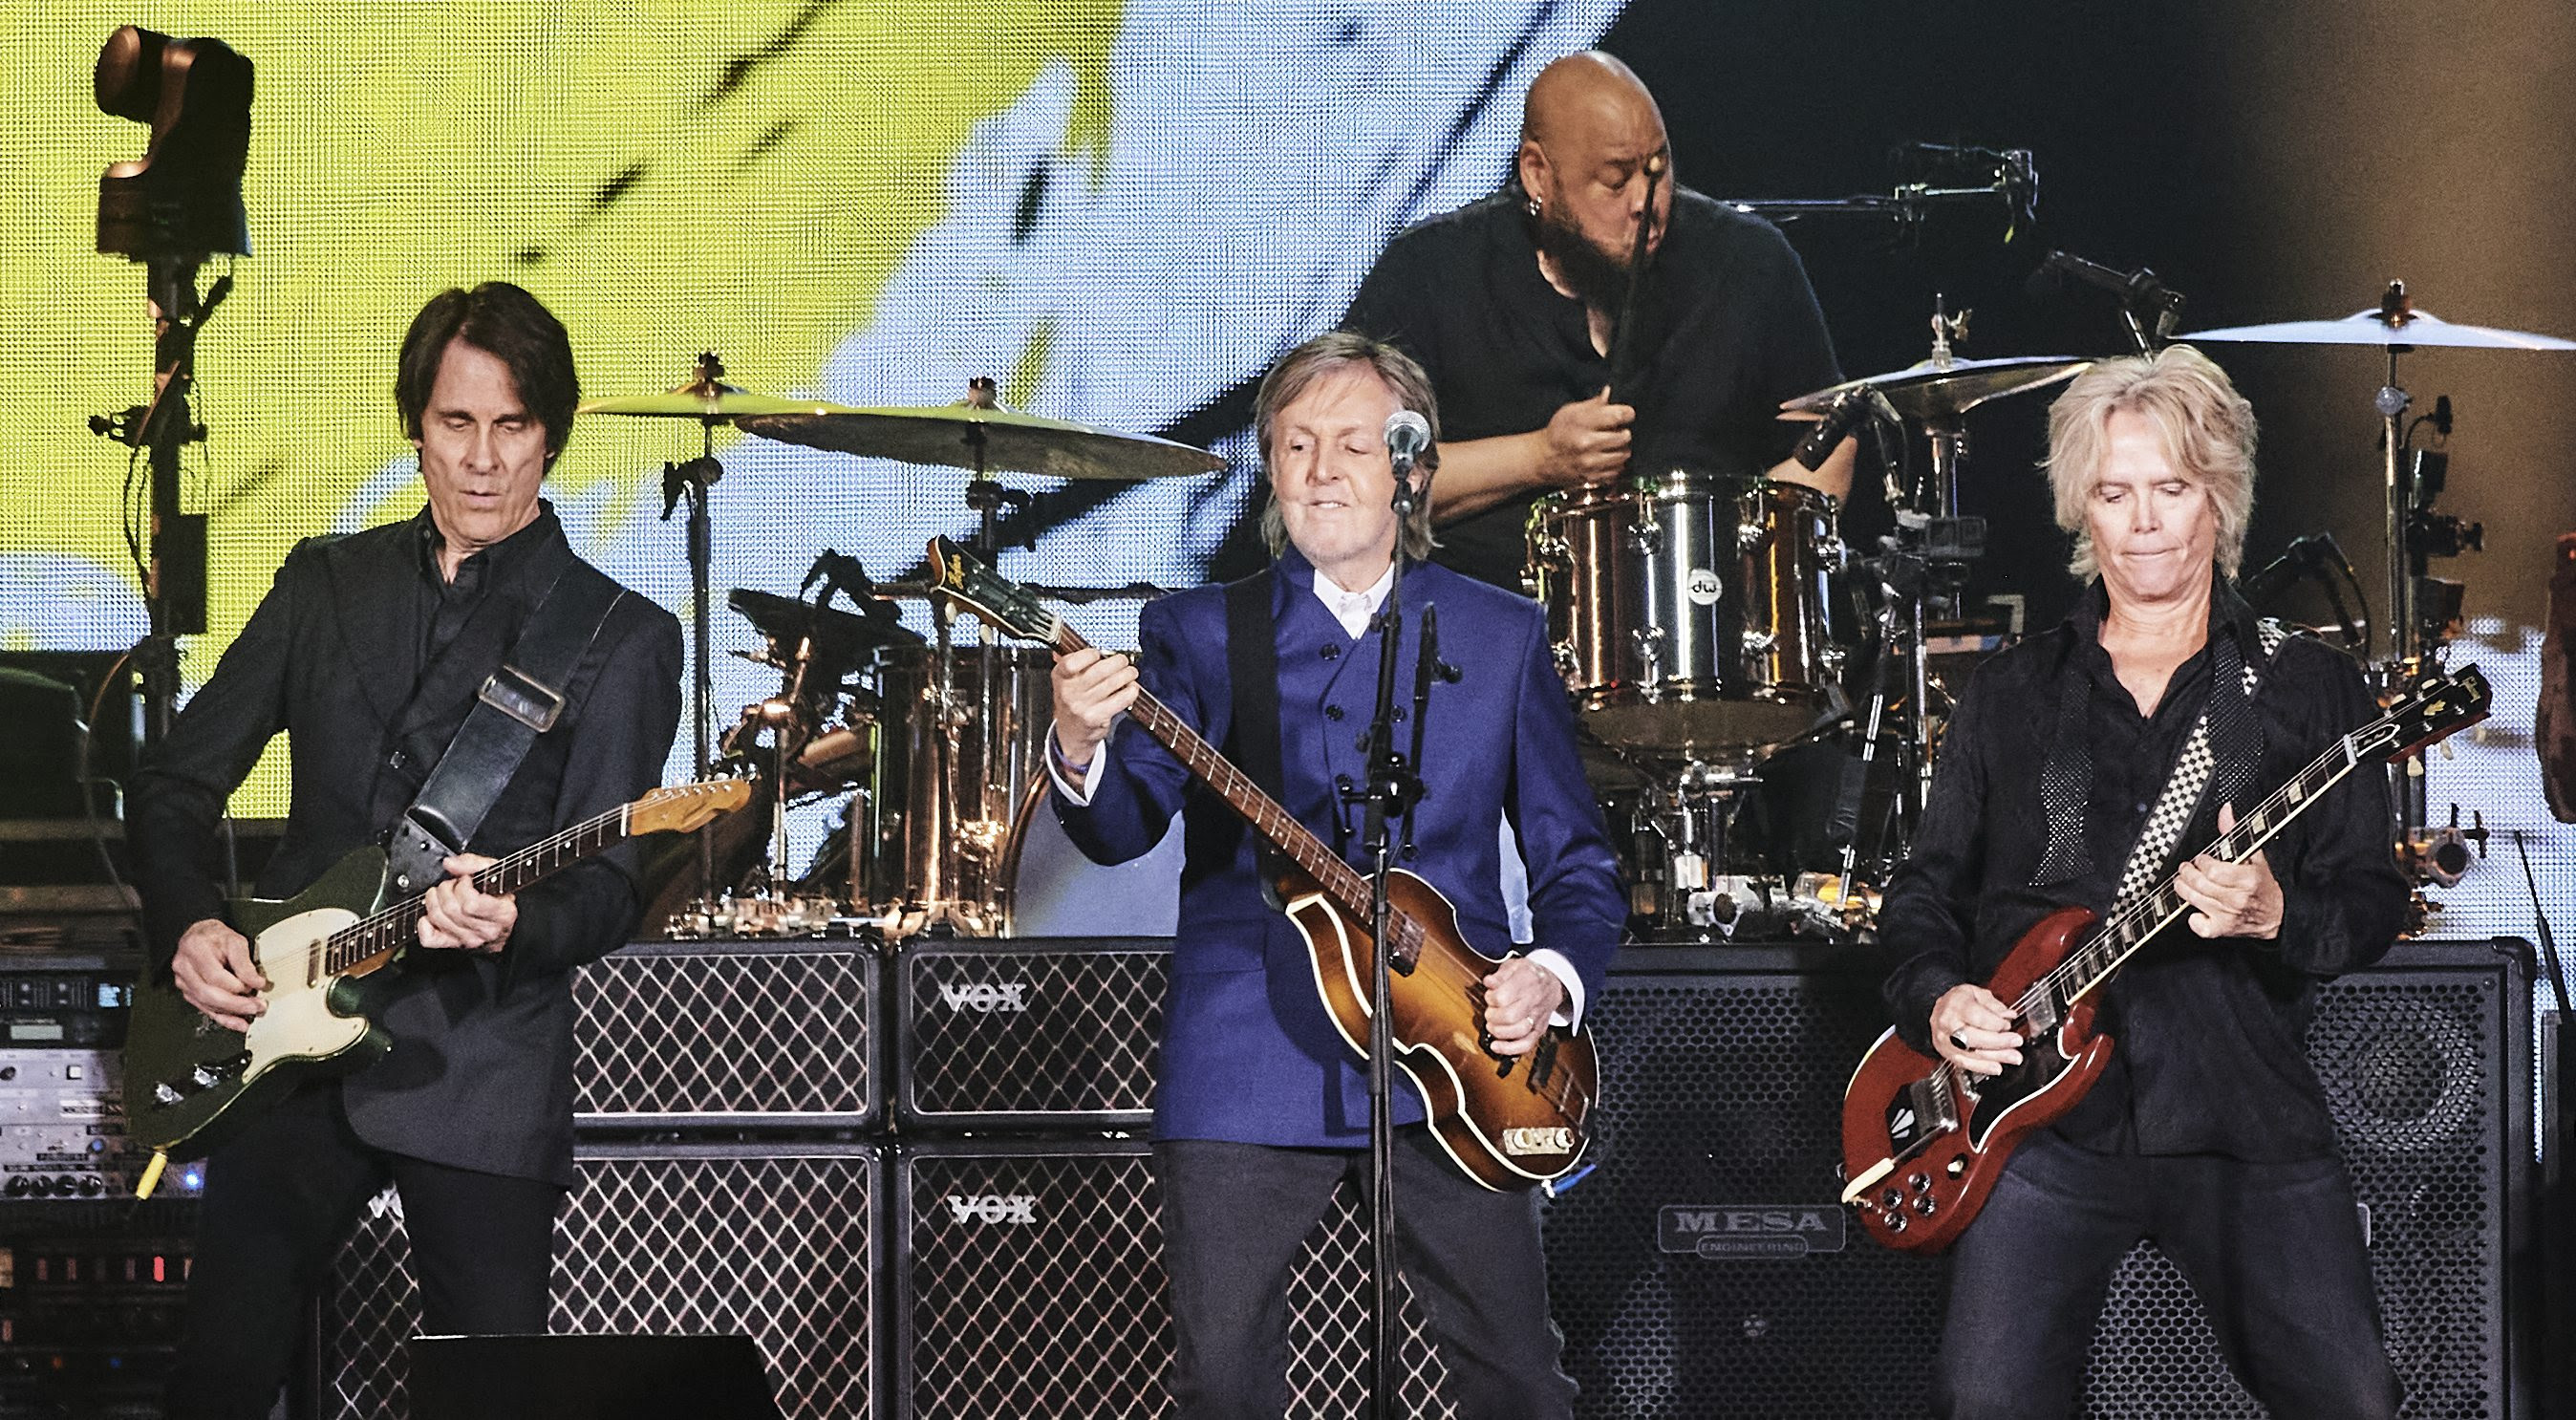 Paul McCartney’s ‘Got Back’ Tour Scores a Touchdown With Marathon SoFi Stadium Show: Concert Review